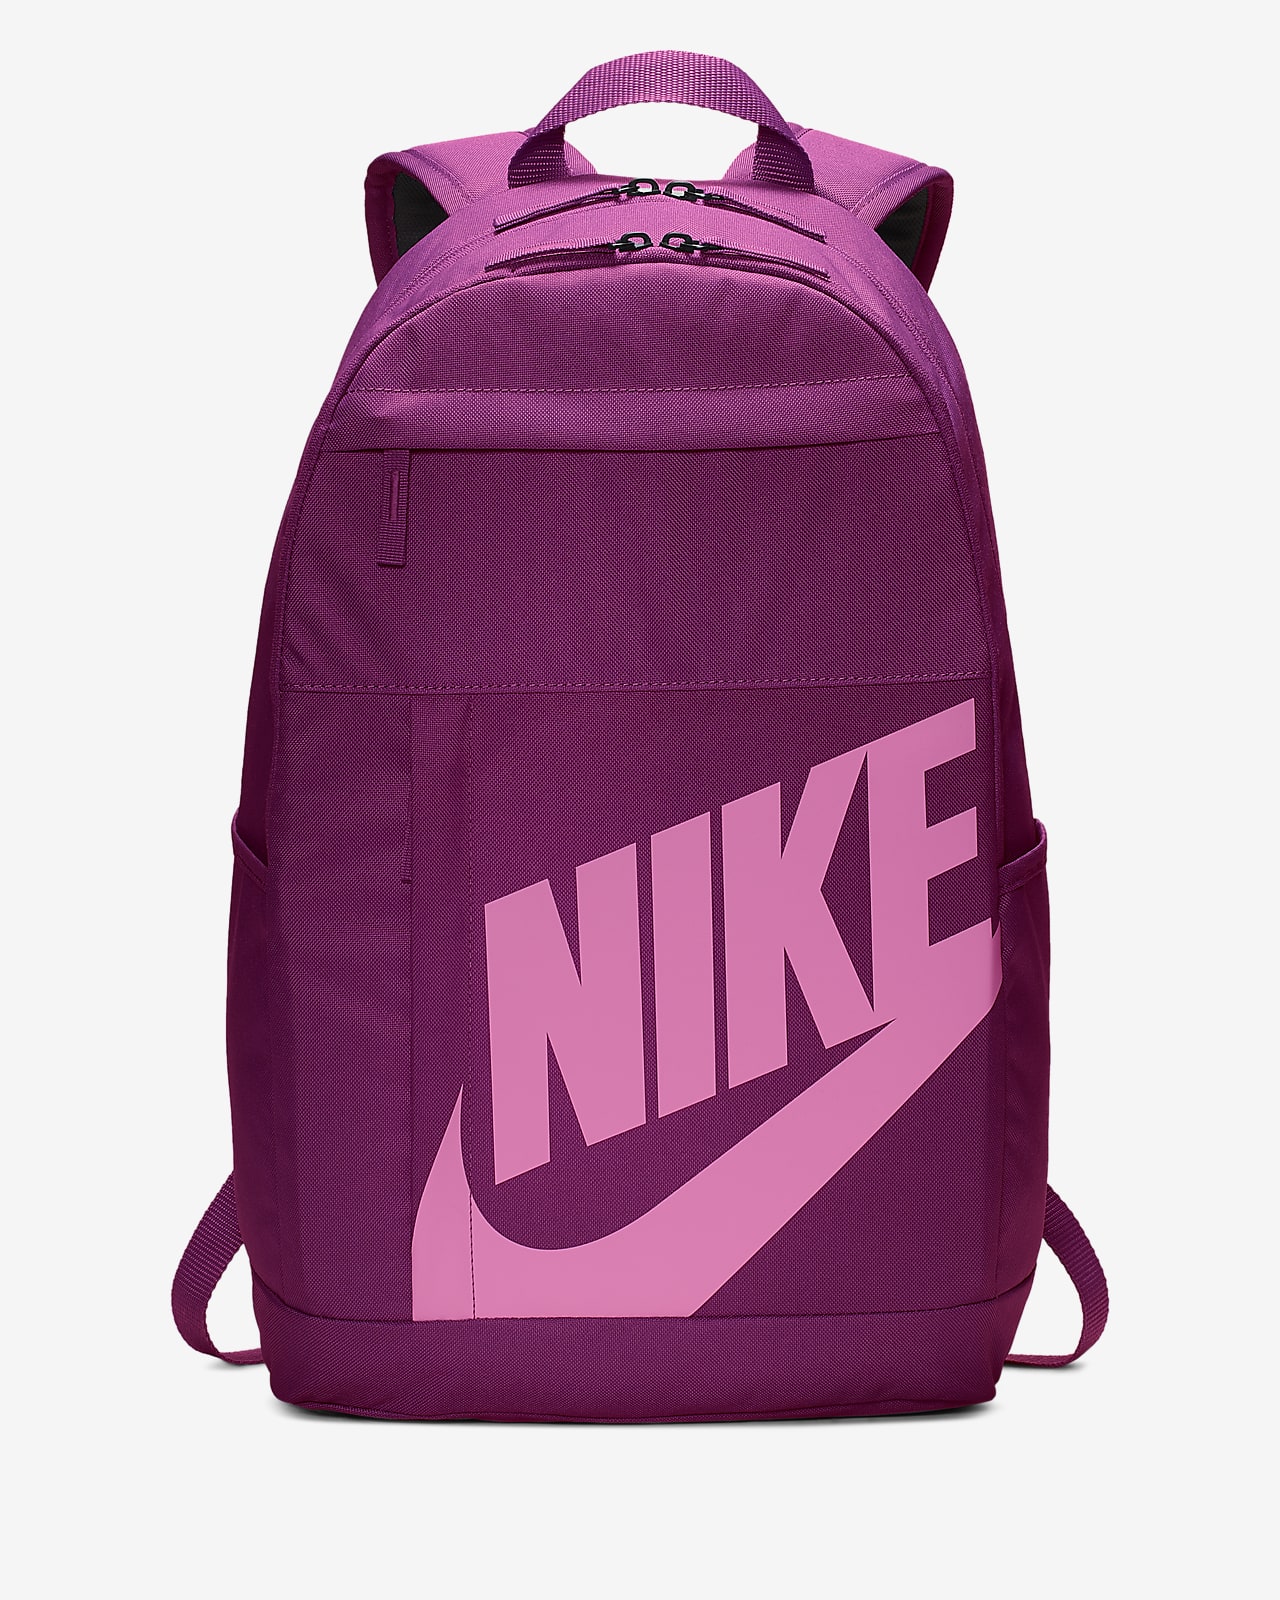 pink and purple nike bag